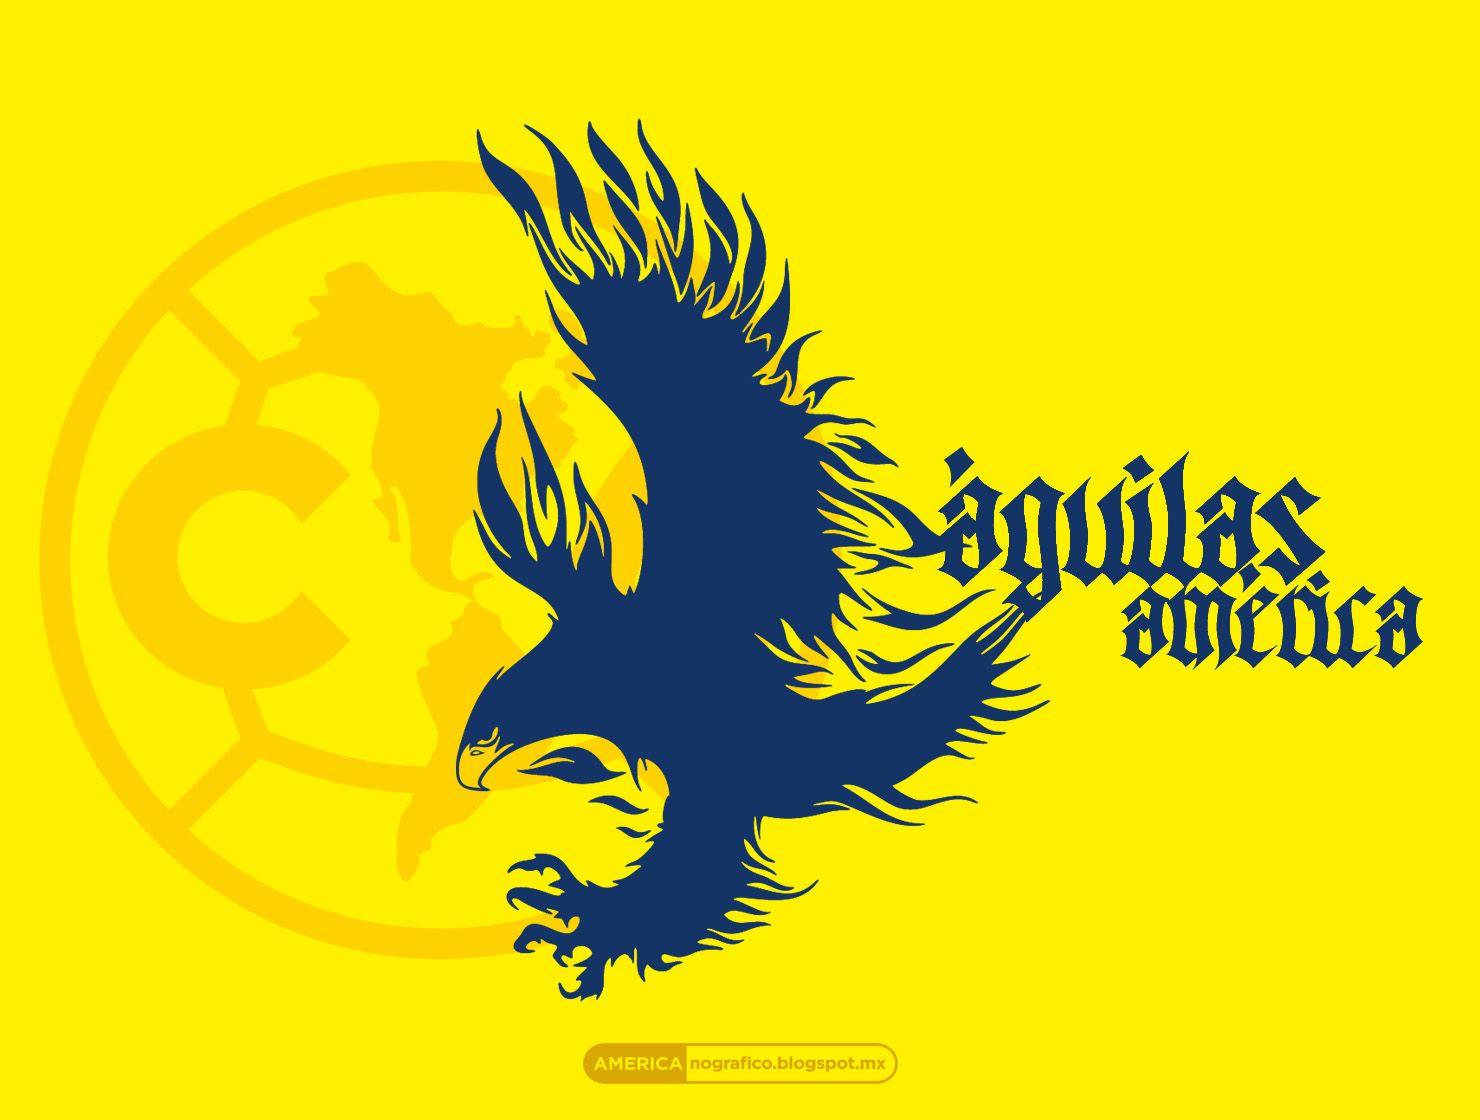 Aguilas Del America Wallpapers - Top Free Aguilas Del ...